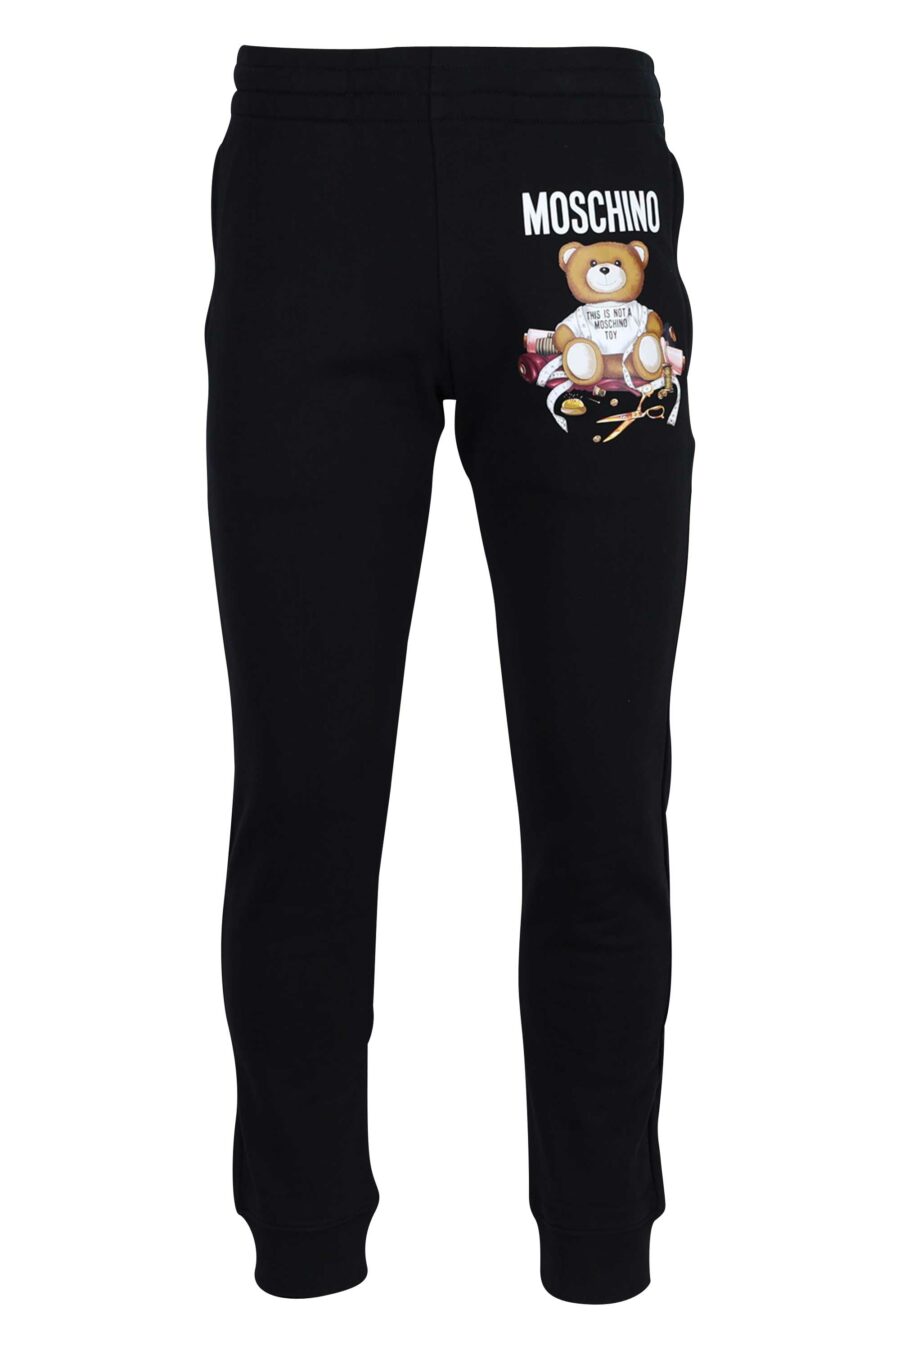 Pantalón de chándal negro con logo "teddy sastre" - 667113124759